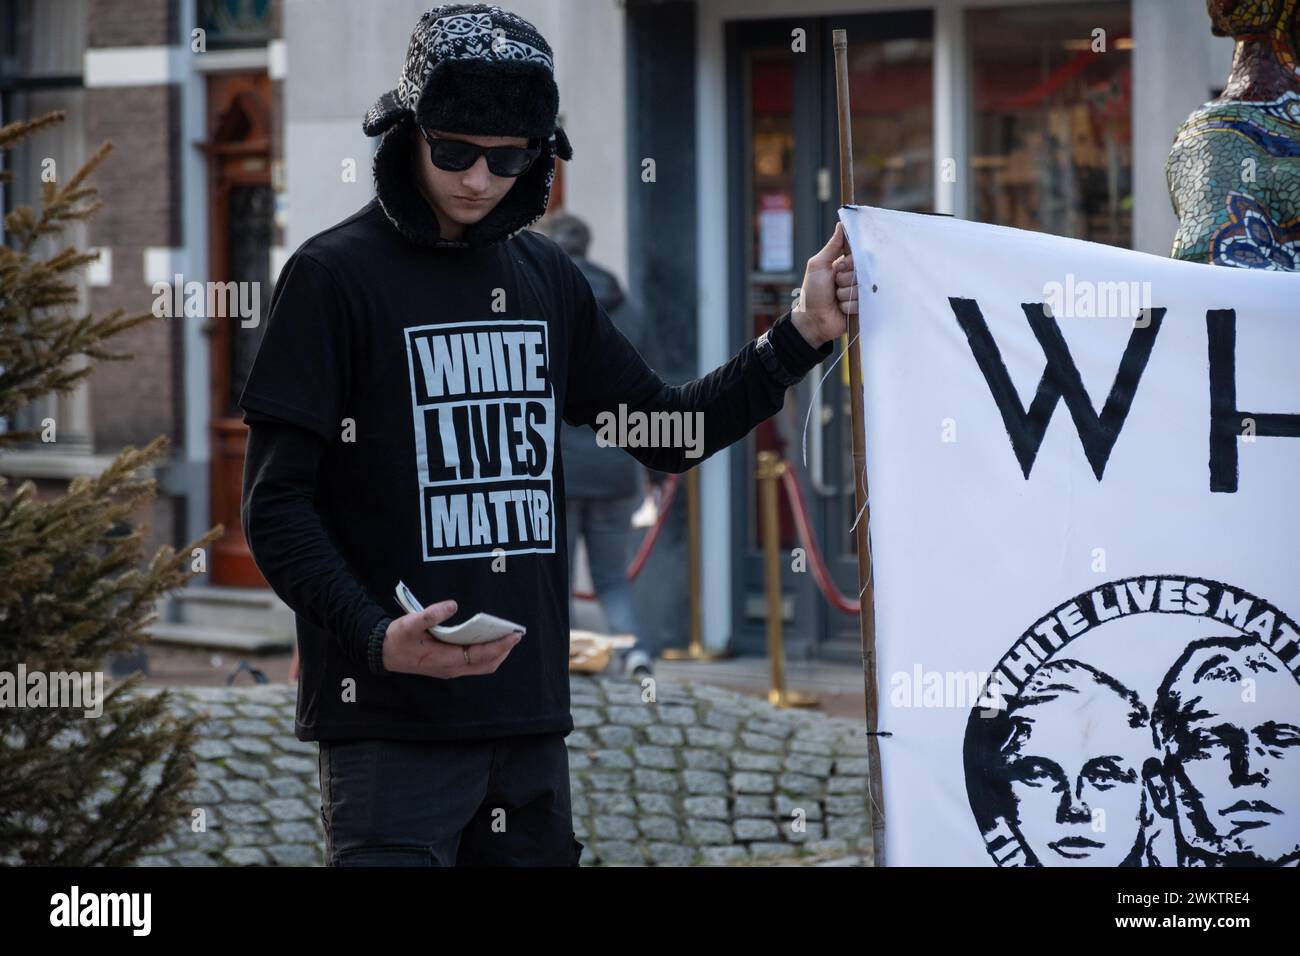 Gouda, Niederlande 17.02.24. Die niederländische Fraktion der rechtsextremen Bewegung White Lives Matter führt öffentliche Demonstrationen im Stadtzentrum durch. Stockfoto